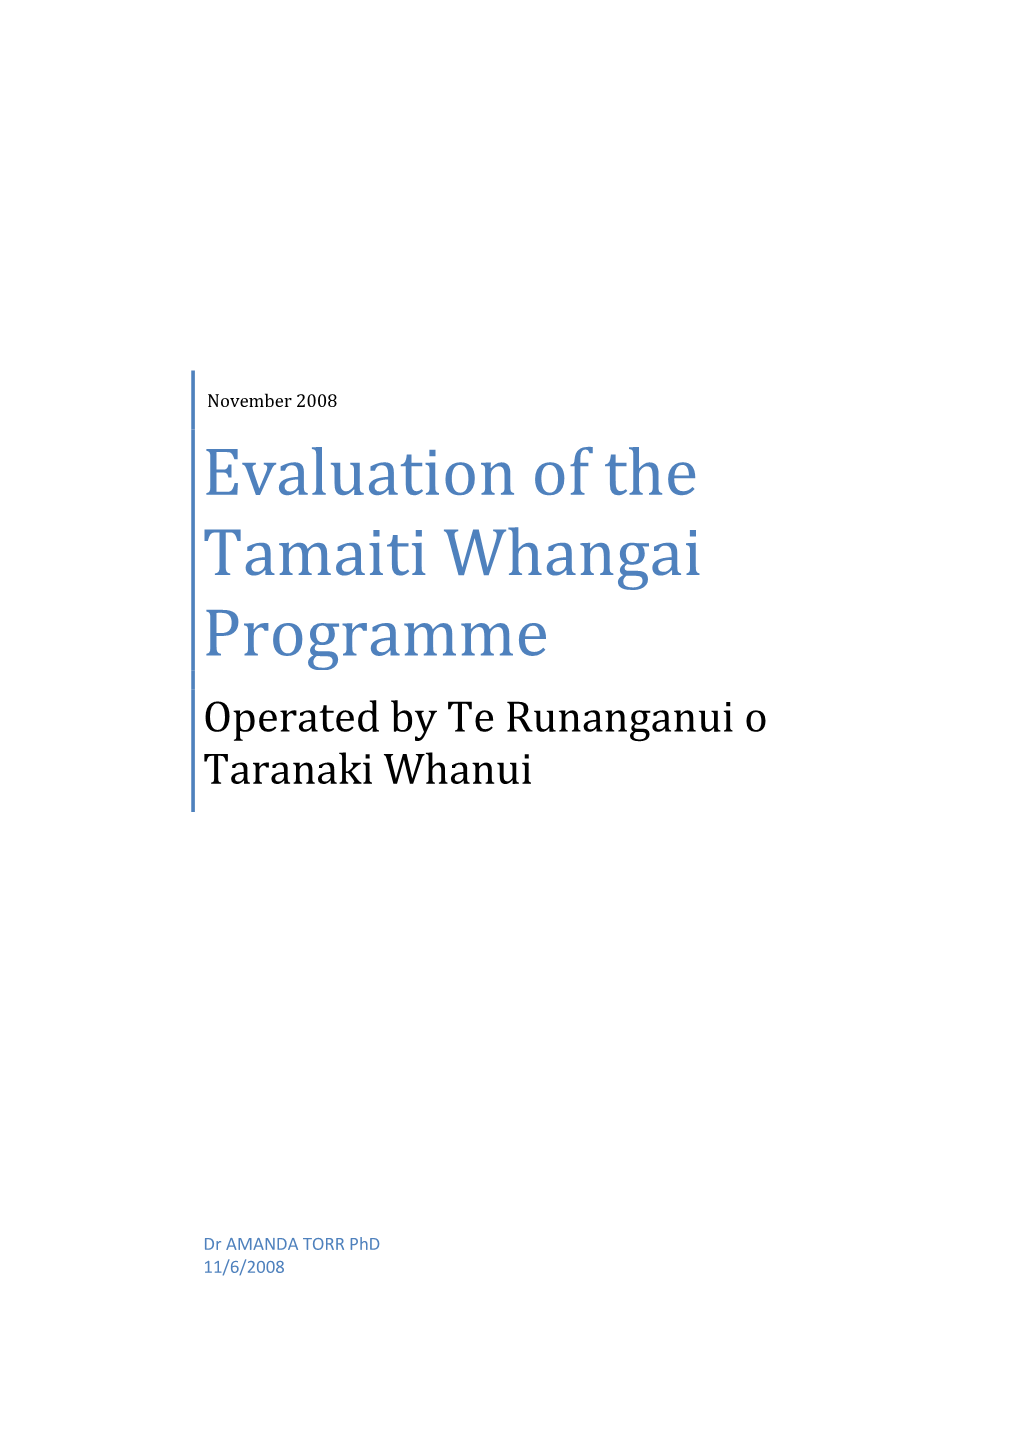 Evaluation of the Tamaiti Whangai Programme Operated by Te Runanganui O Taranaki Whanui